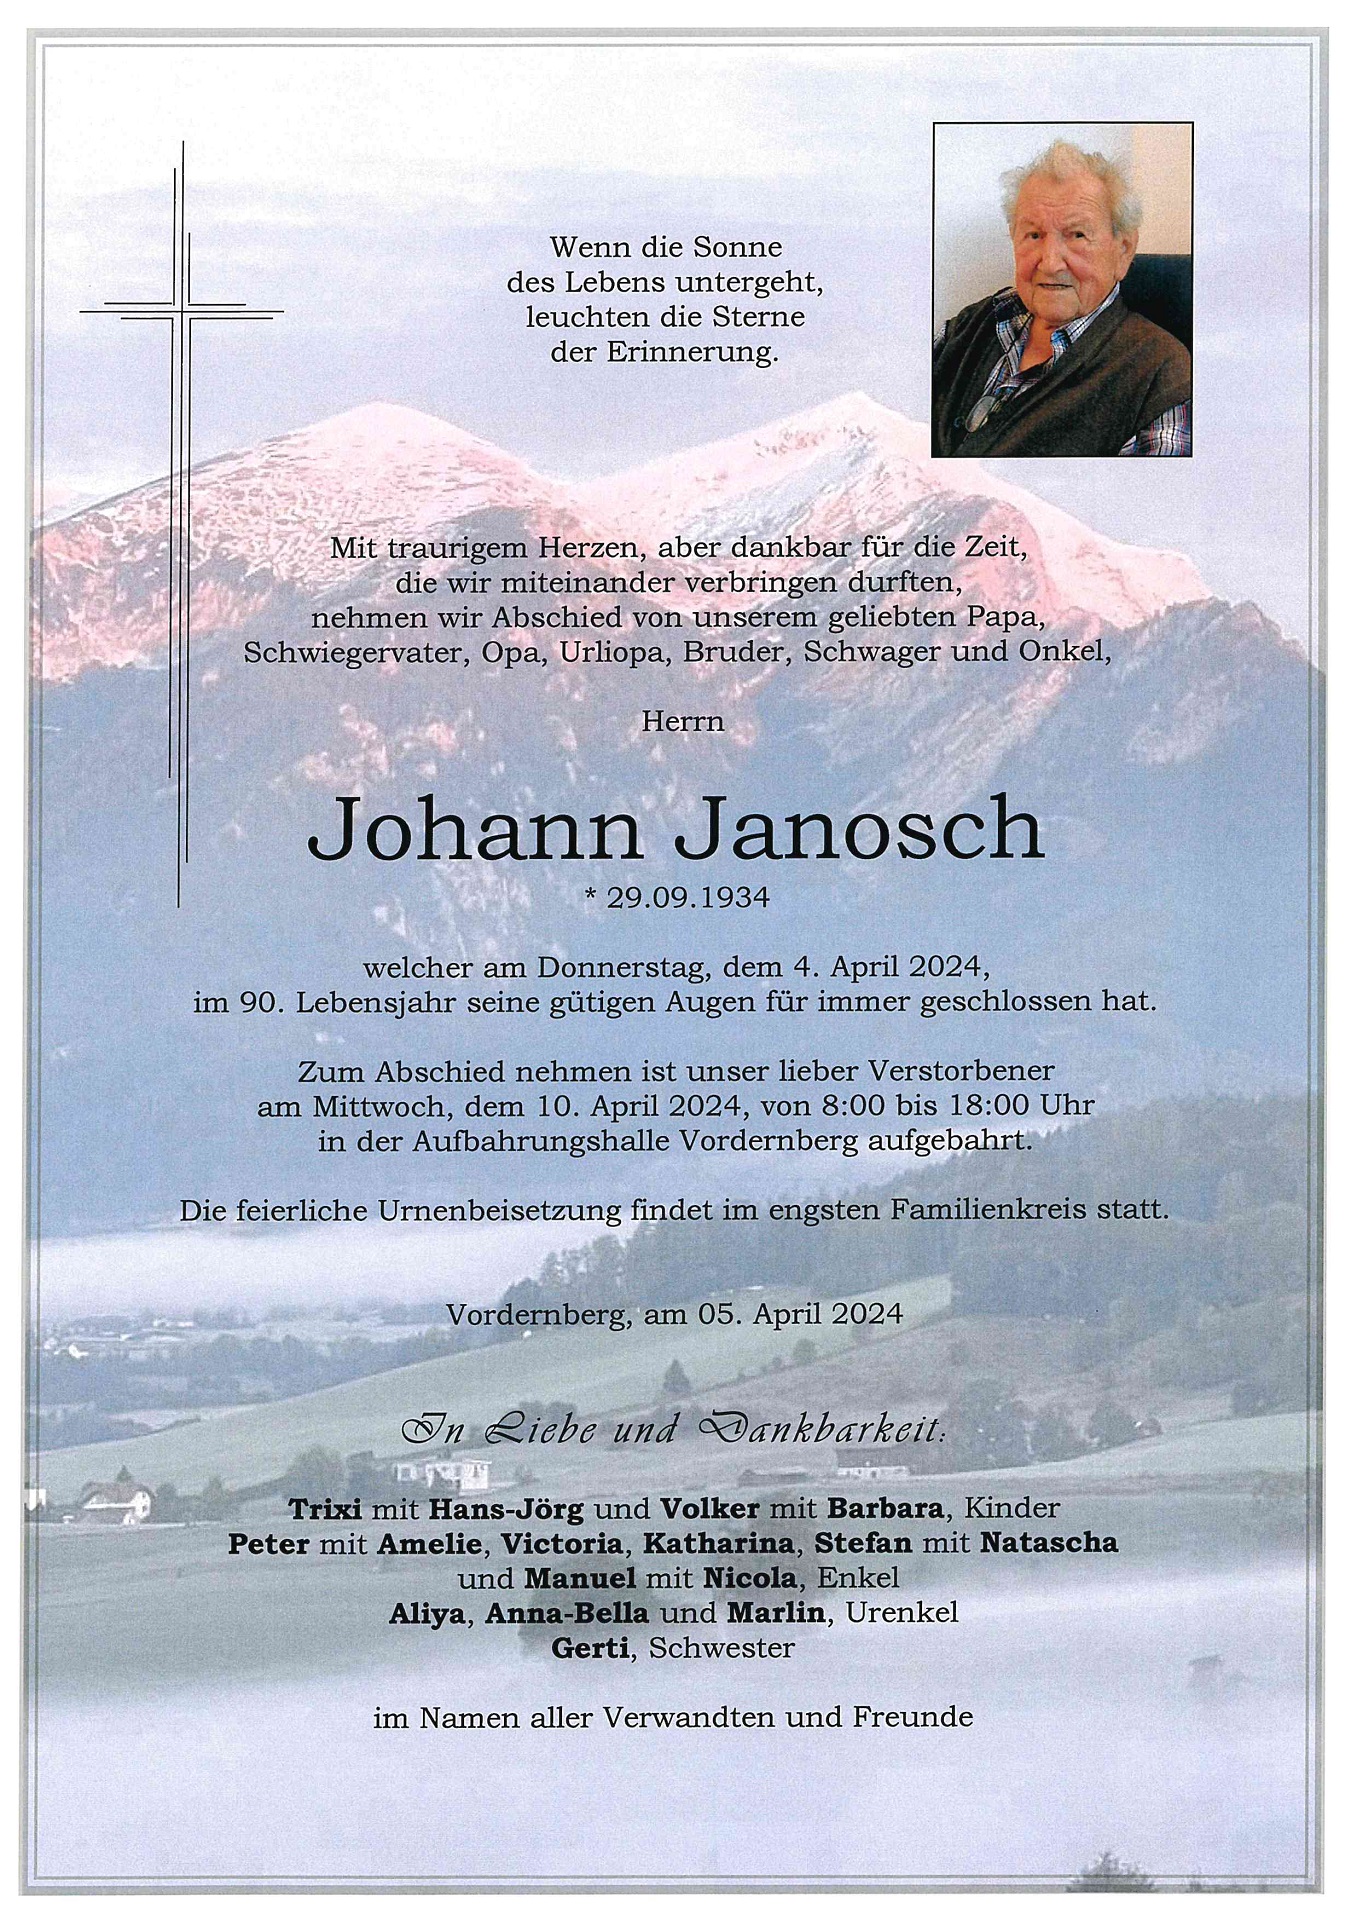 Janosch Johann